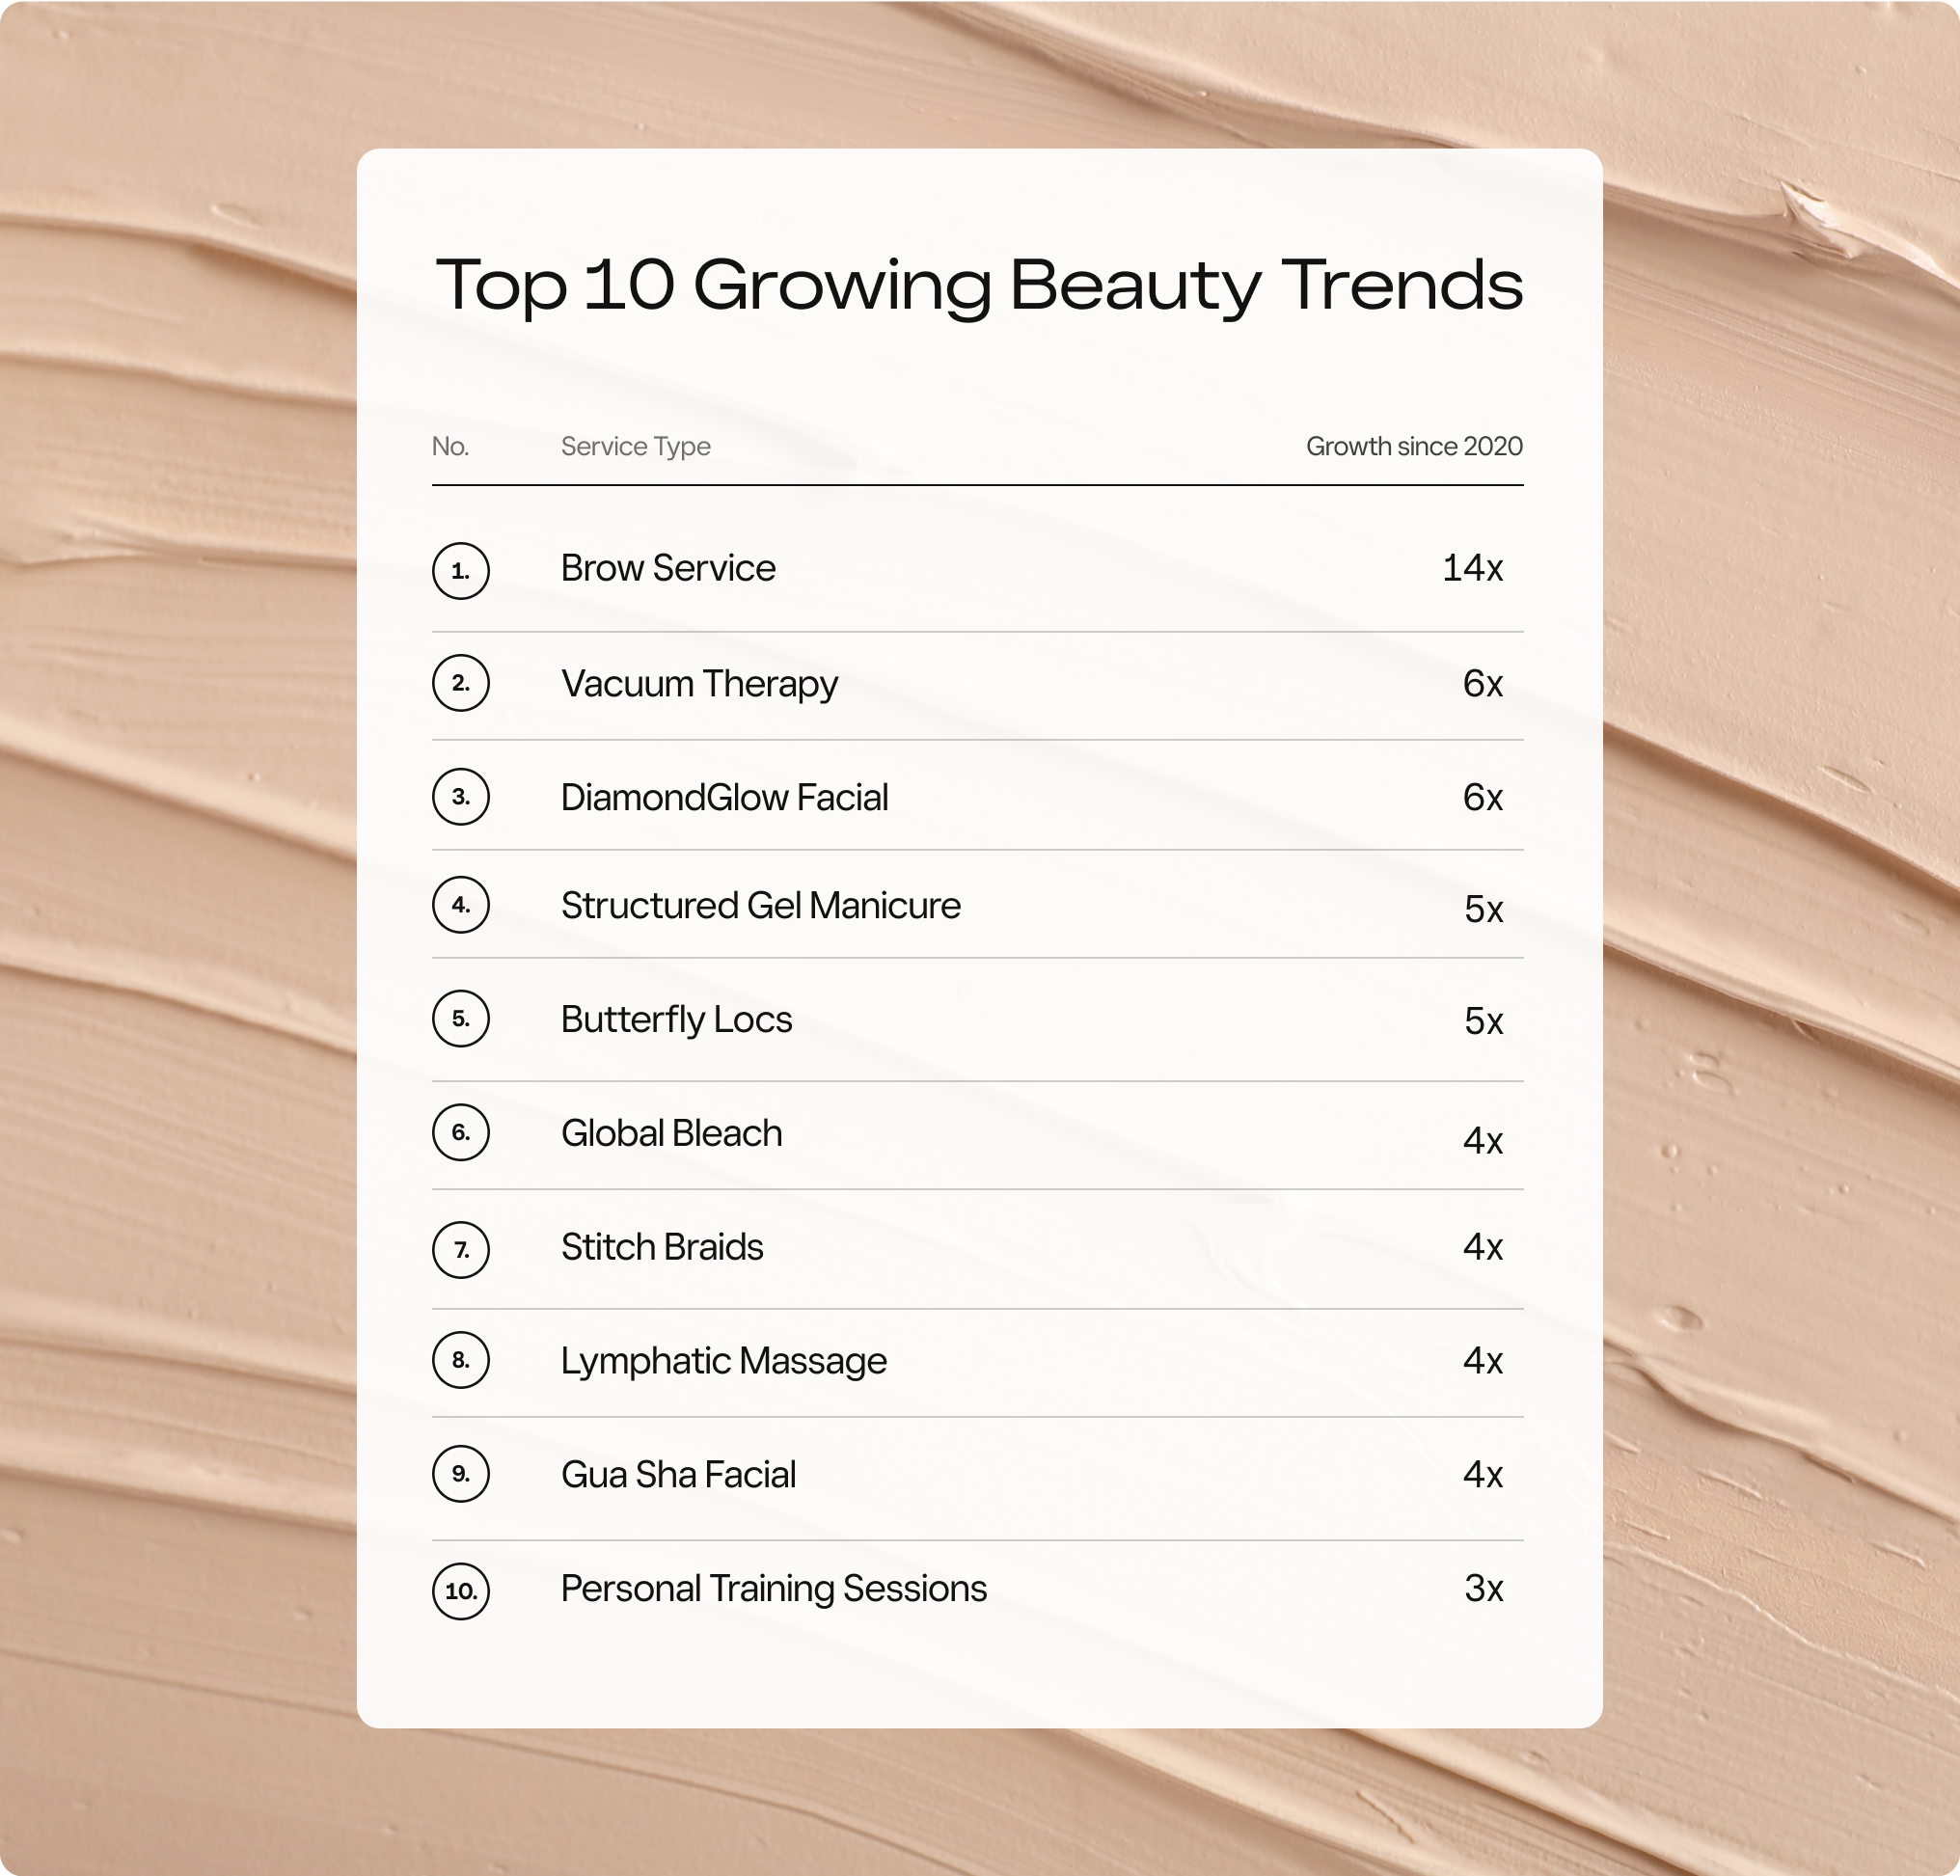 Top 10 Growing Beauty Trends